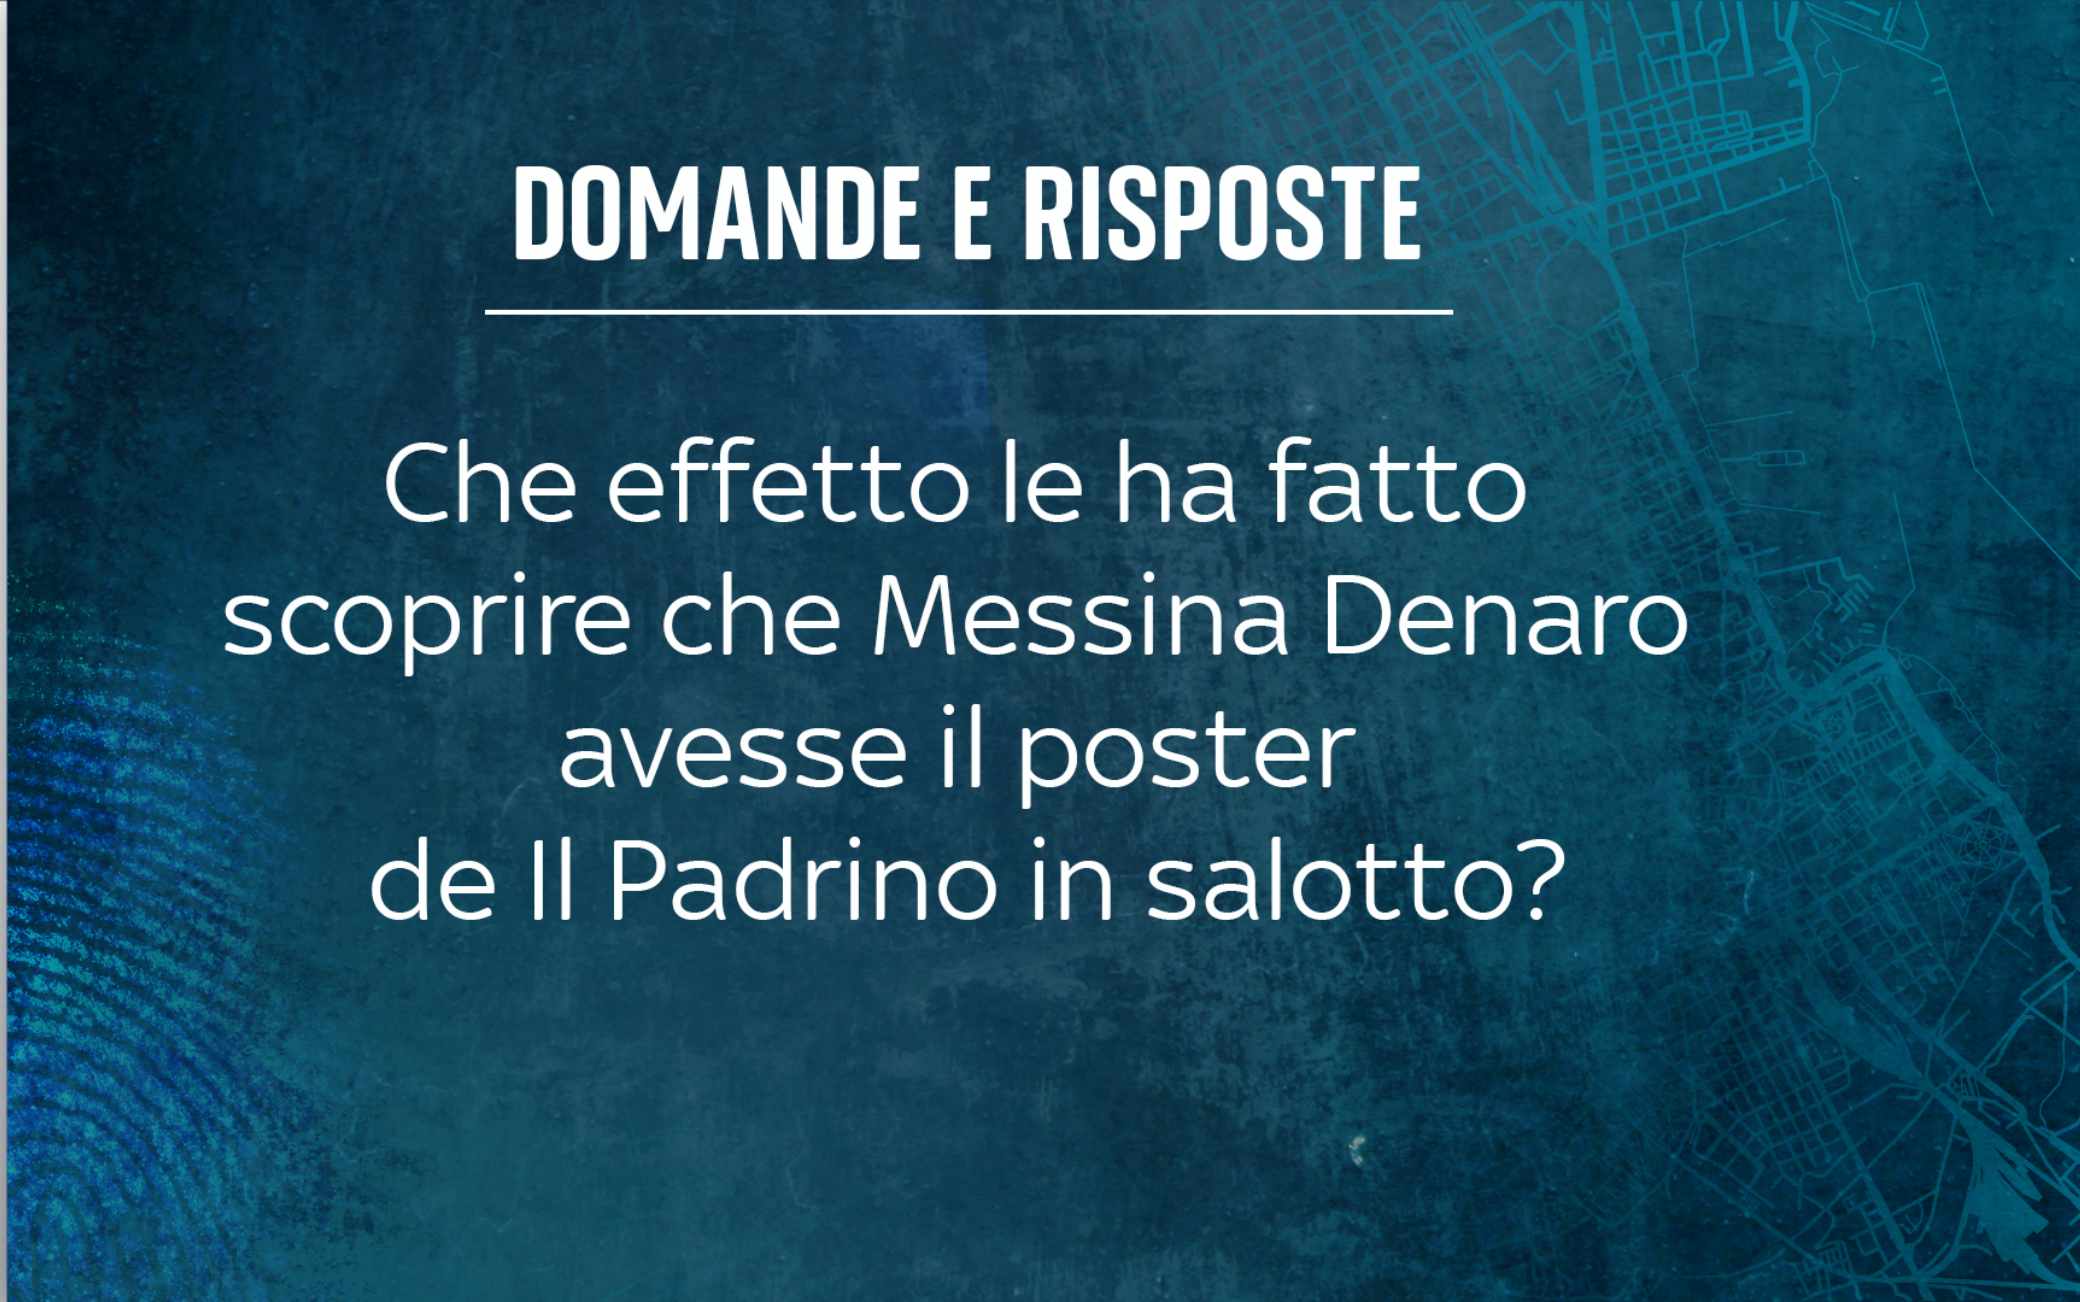 Che effetto le ha fatto scoprire che Messina Denaro avesse il ritratto de Il Padrino in salotto?